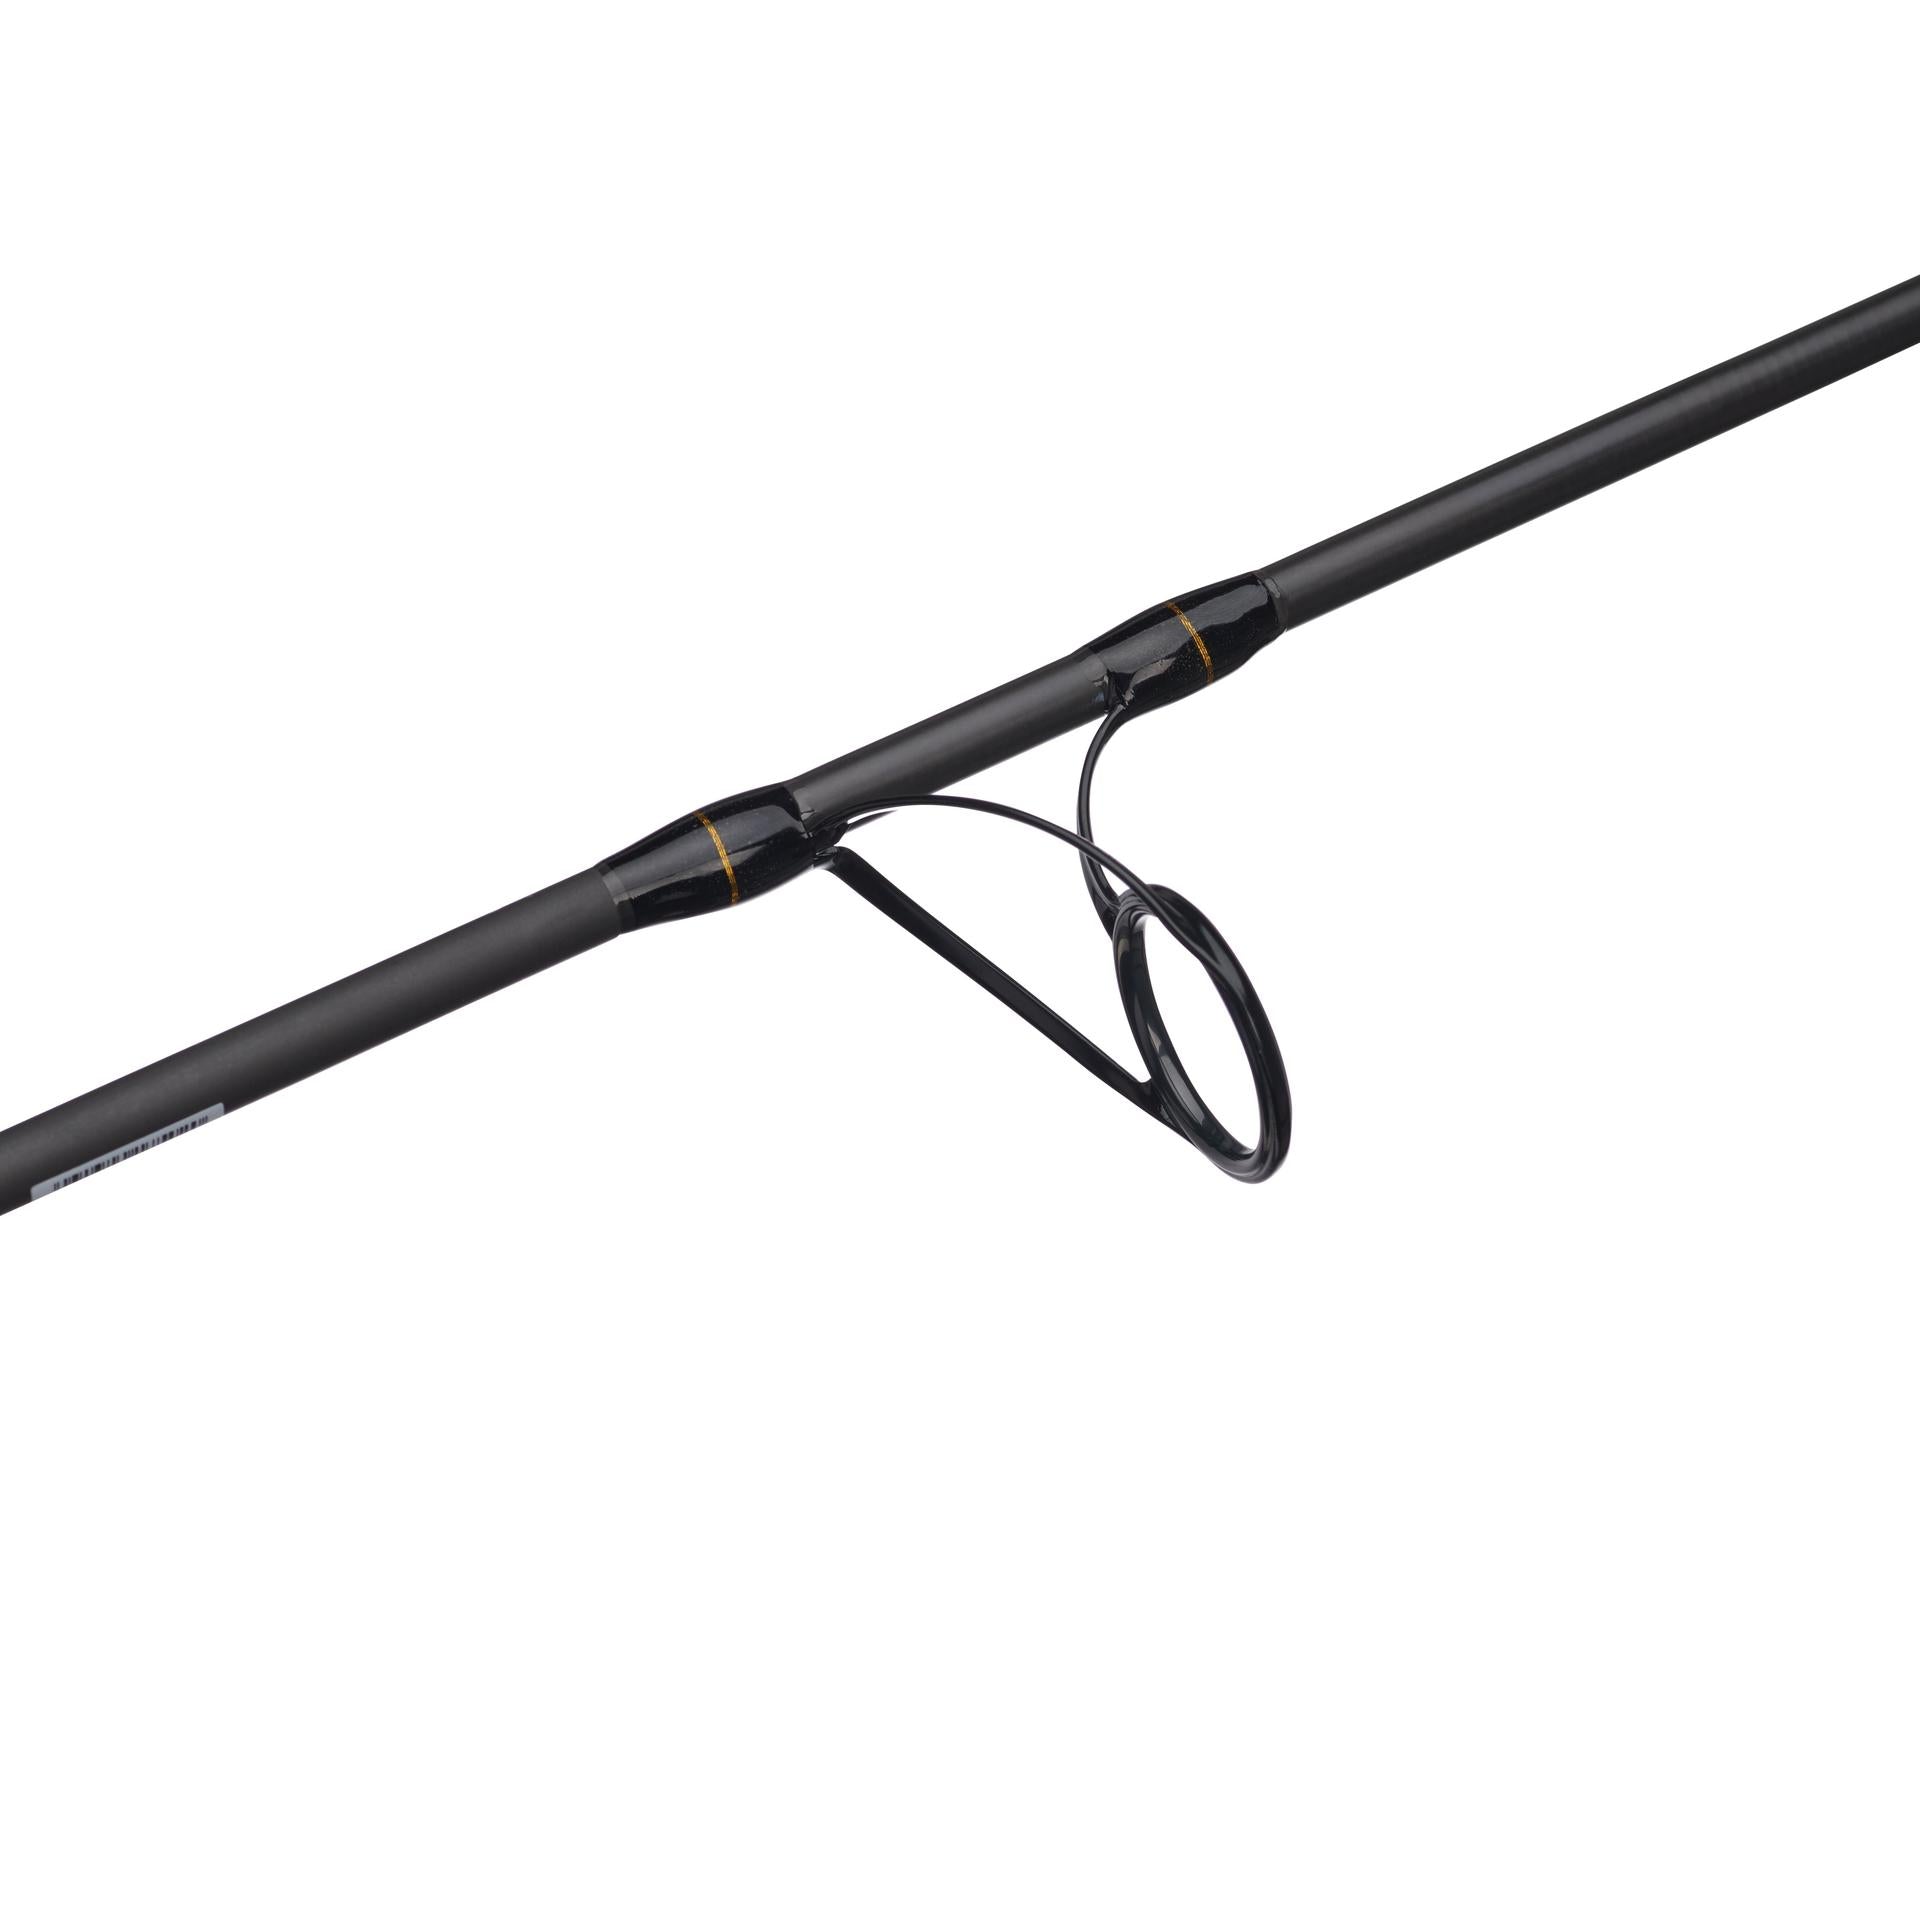 Penn Battalion Popping Rod 8' 100g for sale online